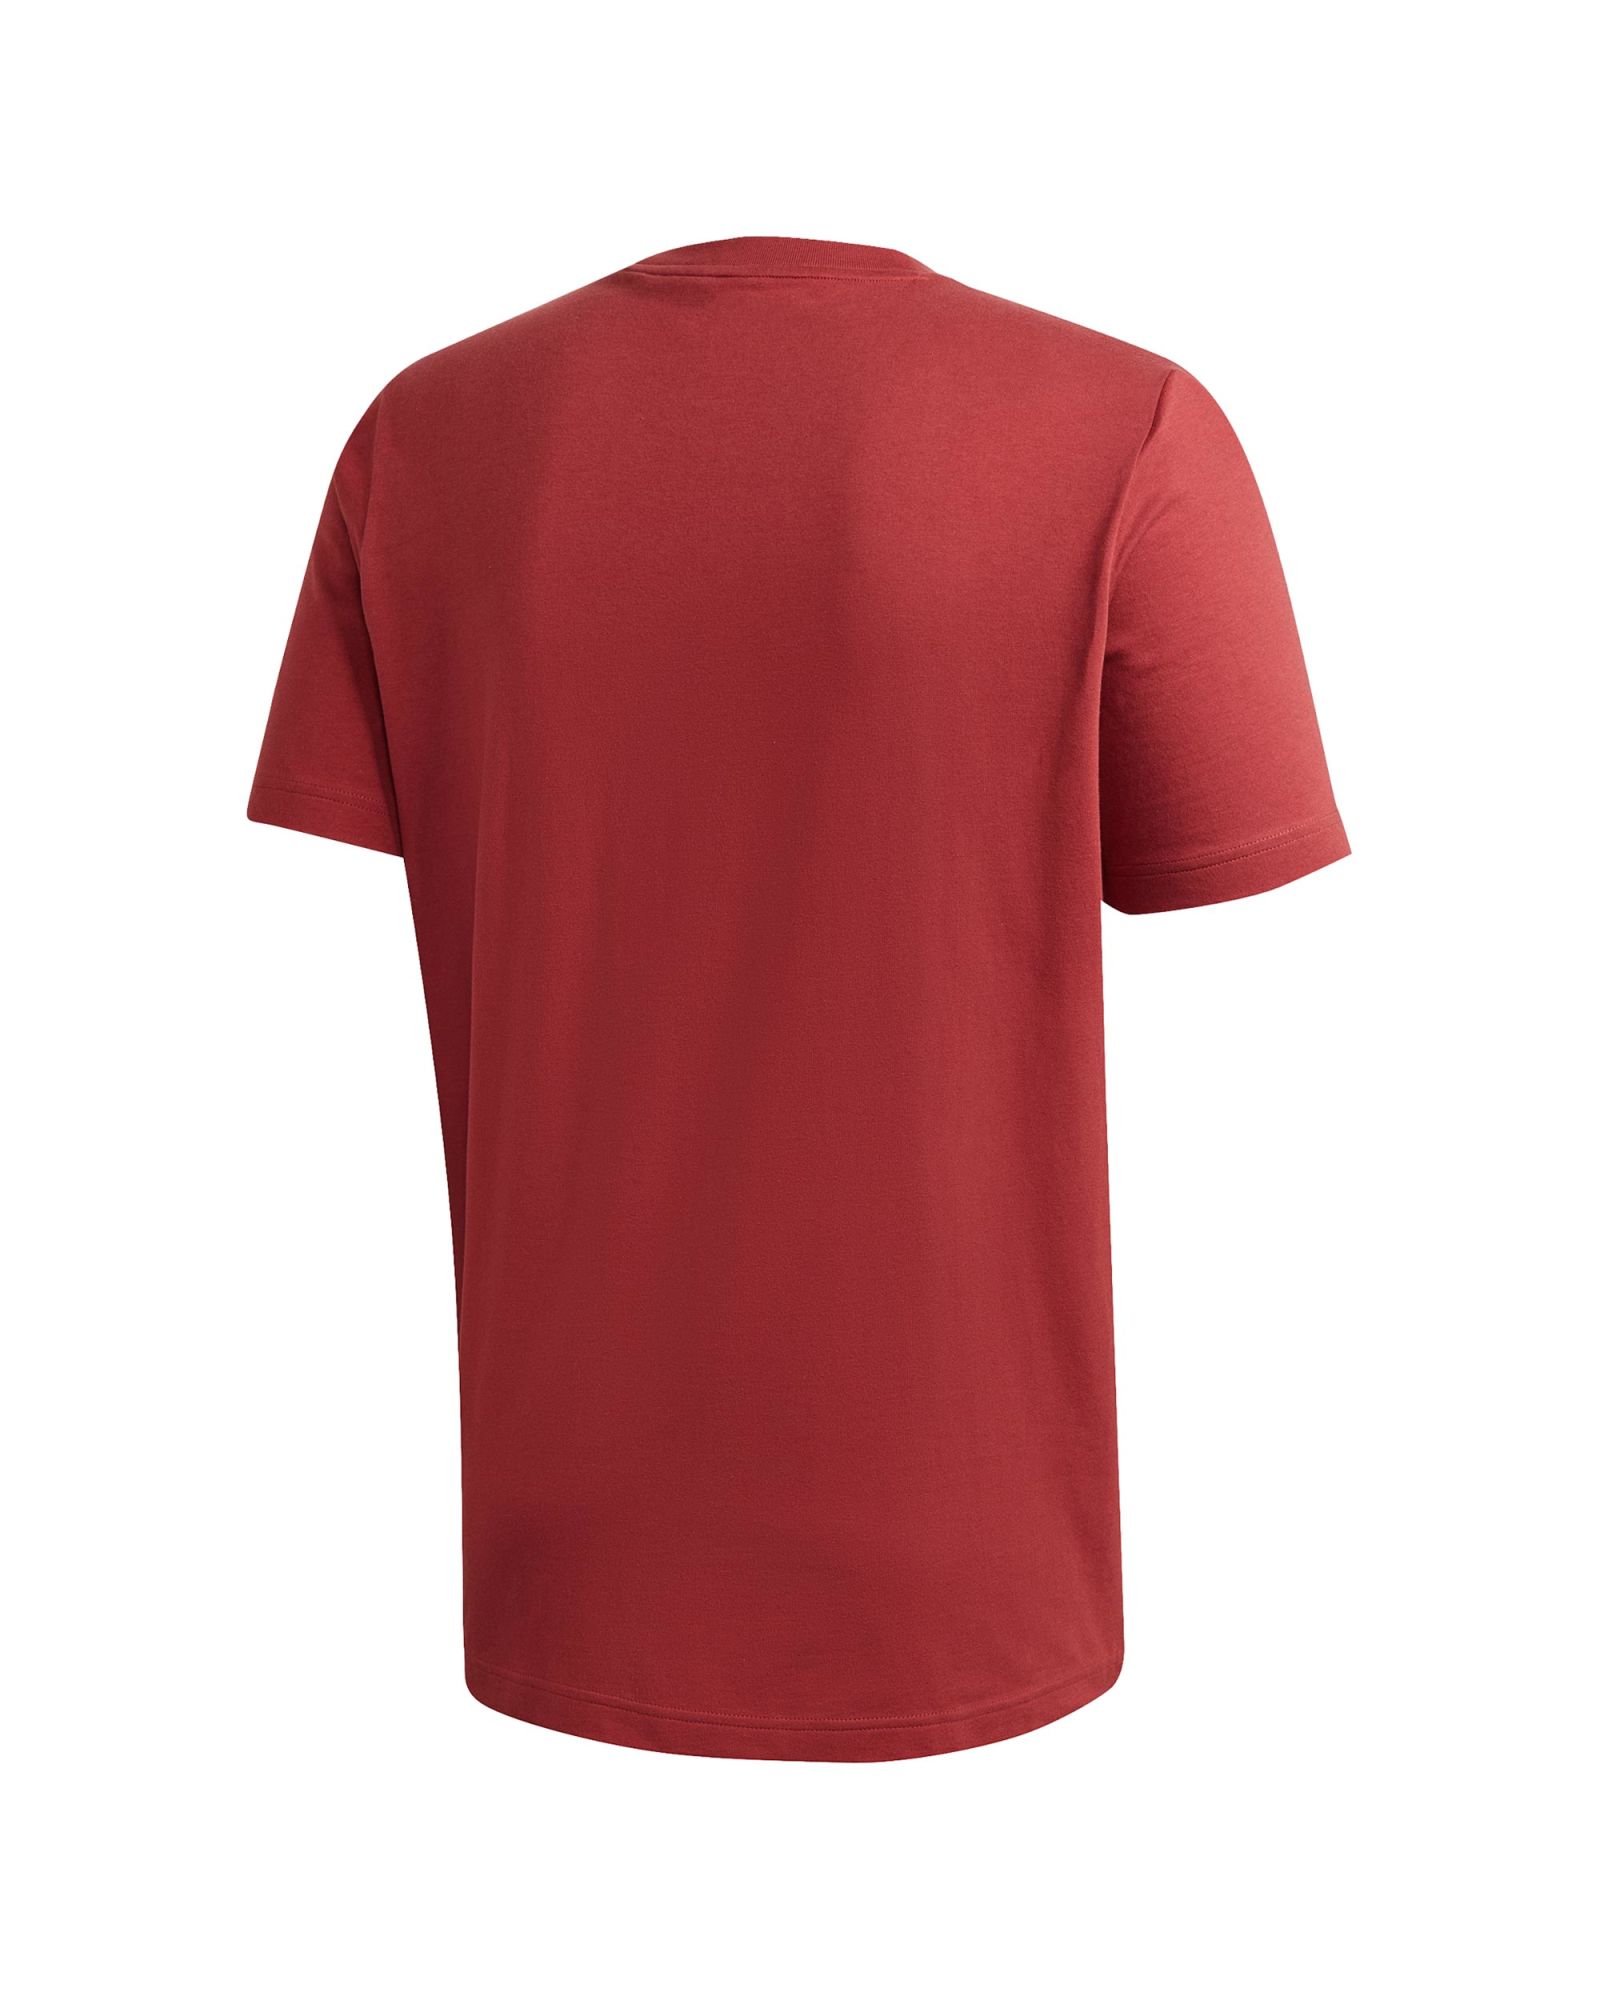 Camiseta de Paseo Must Haves Rojo - Fútbol Factory